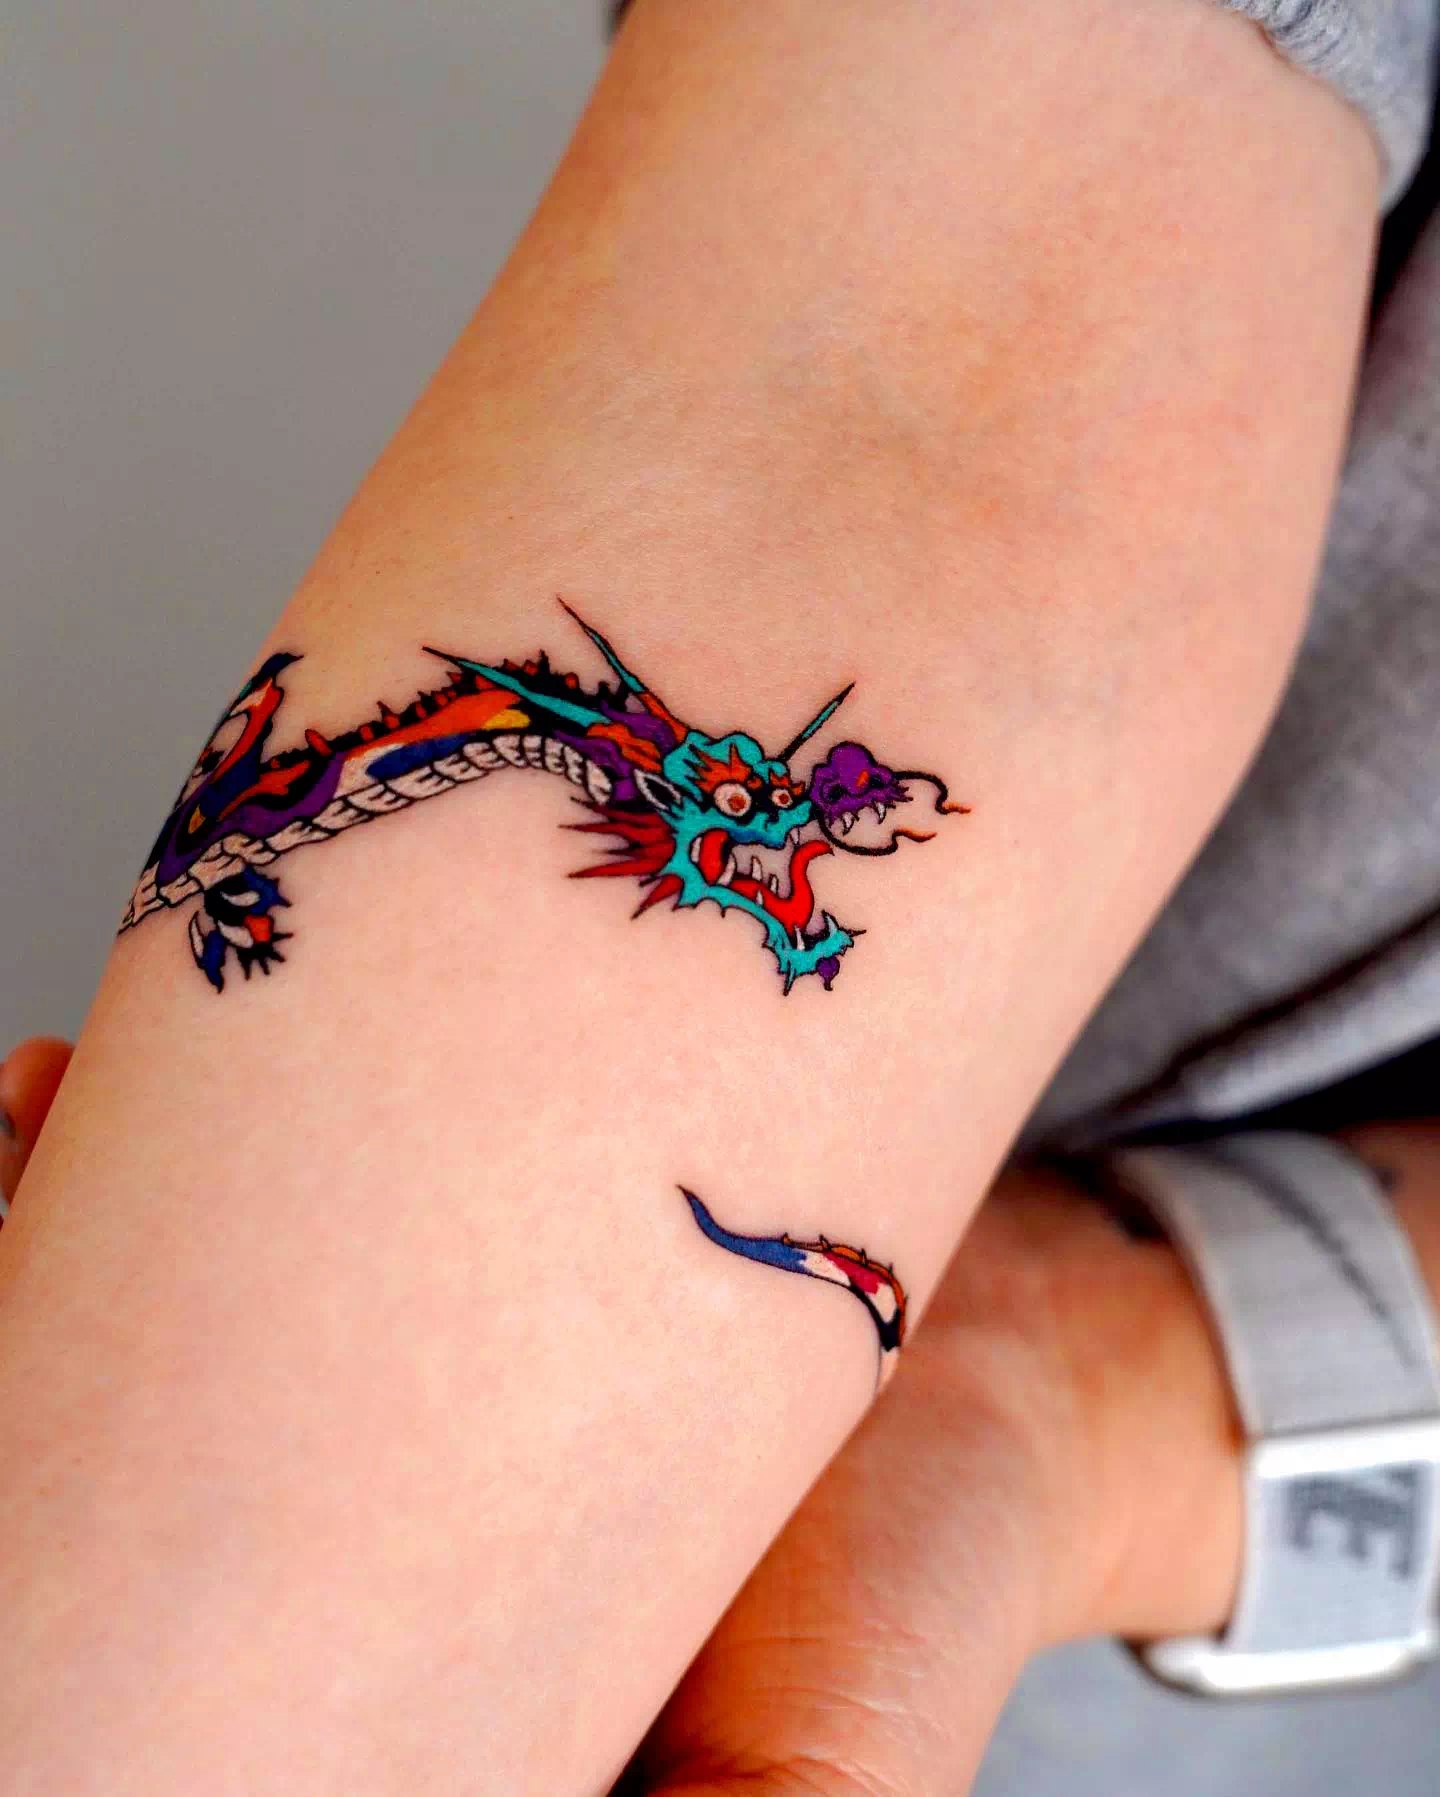 Tatuaje de pulsera inspirado en un dragón